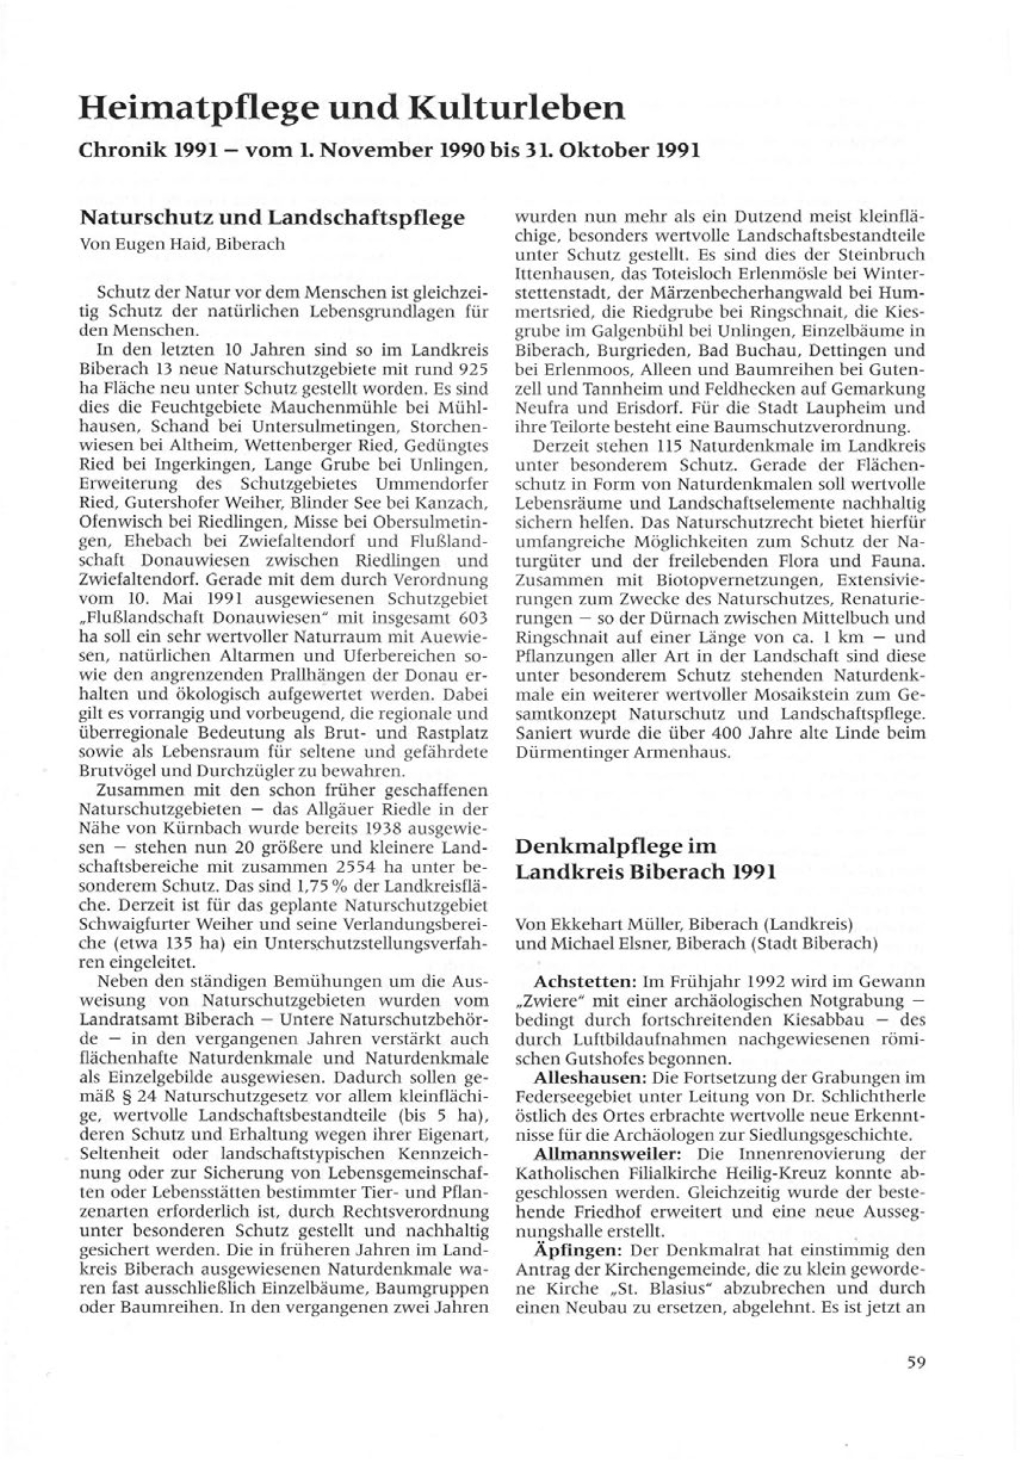 Heirnatpflege Und Kulturleben Chronik 1991- Vom 1.November 1990Bis 31